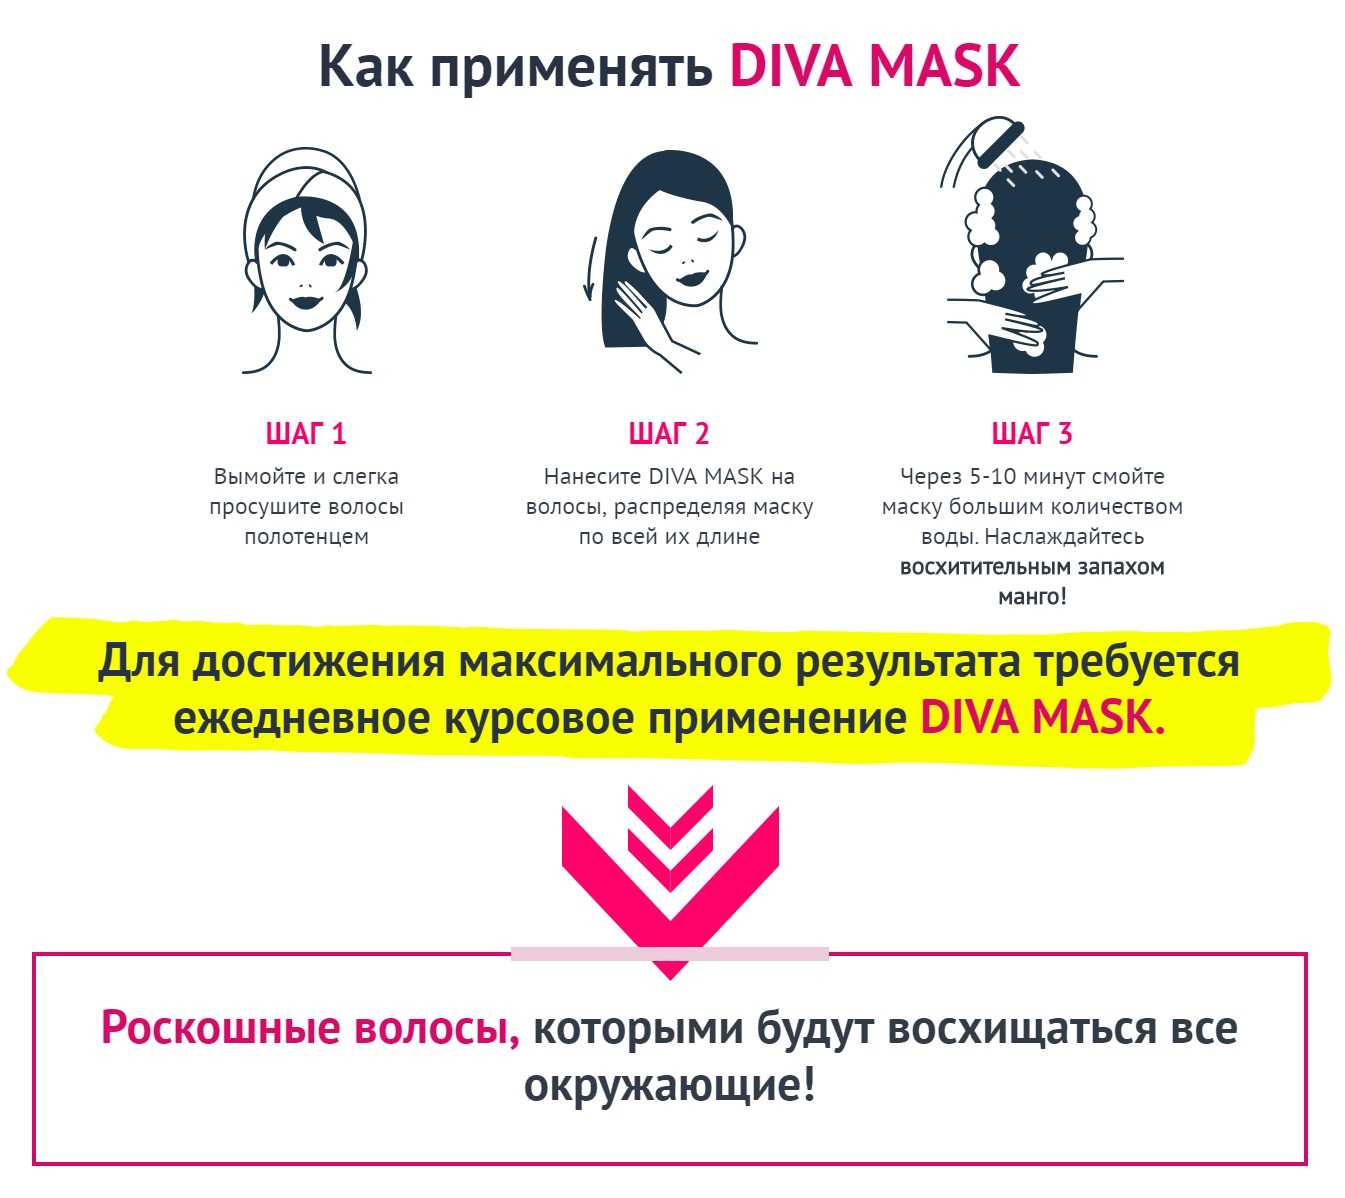 Что нужно наносить на волосы. Последовательность нанесения маски для волос. Инструкция использования маски для волос. Наносить маску на волосы. Как использовать маску для волос.